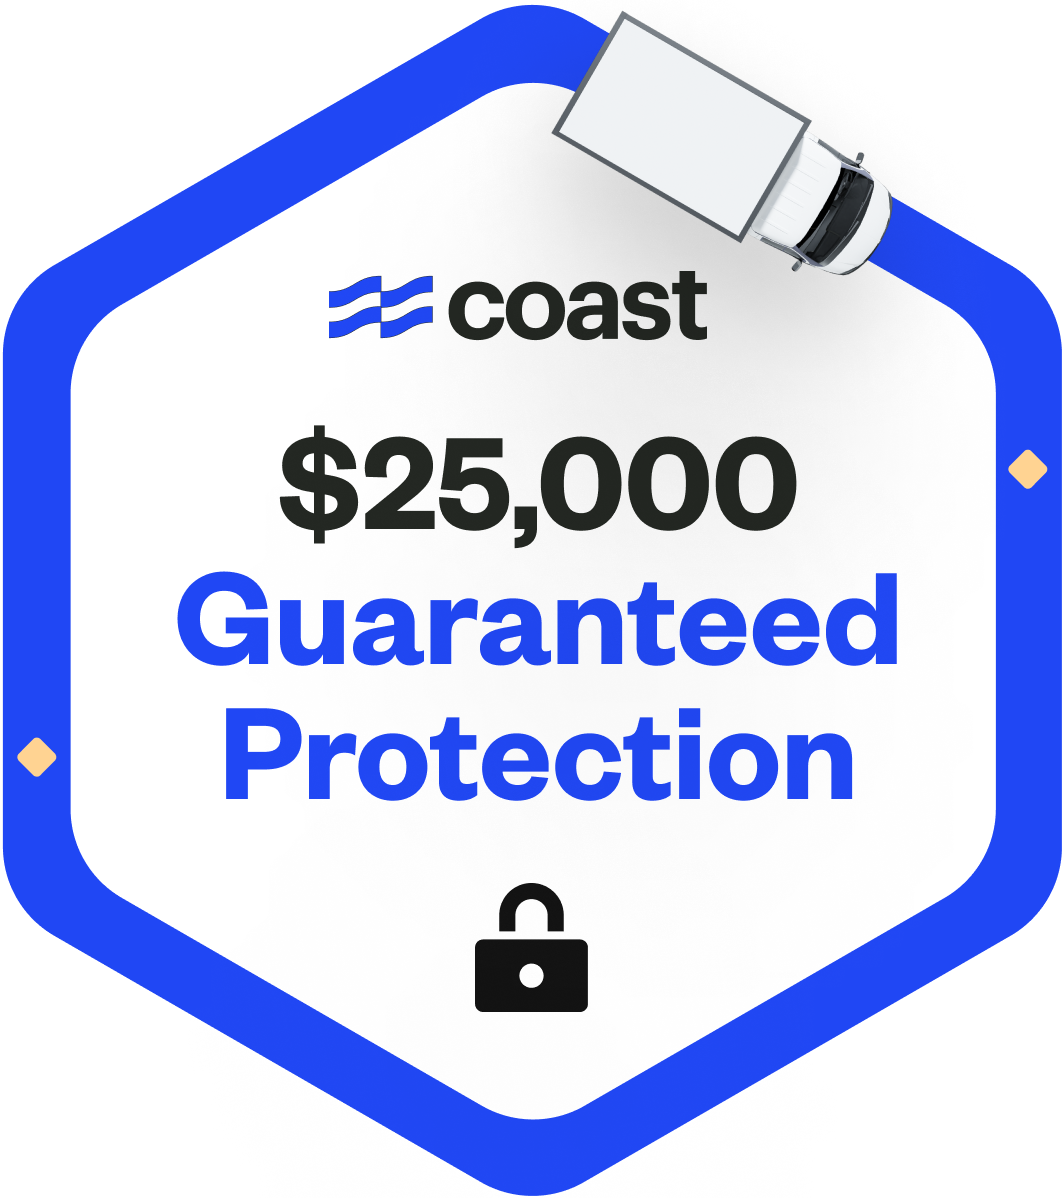 Coast $25,000 Guaranteed Protection